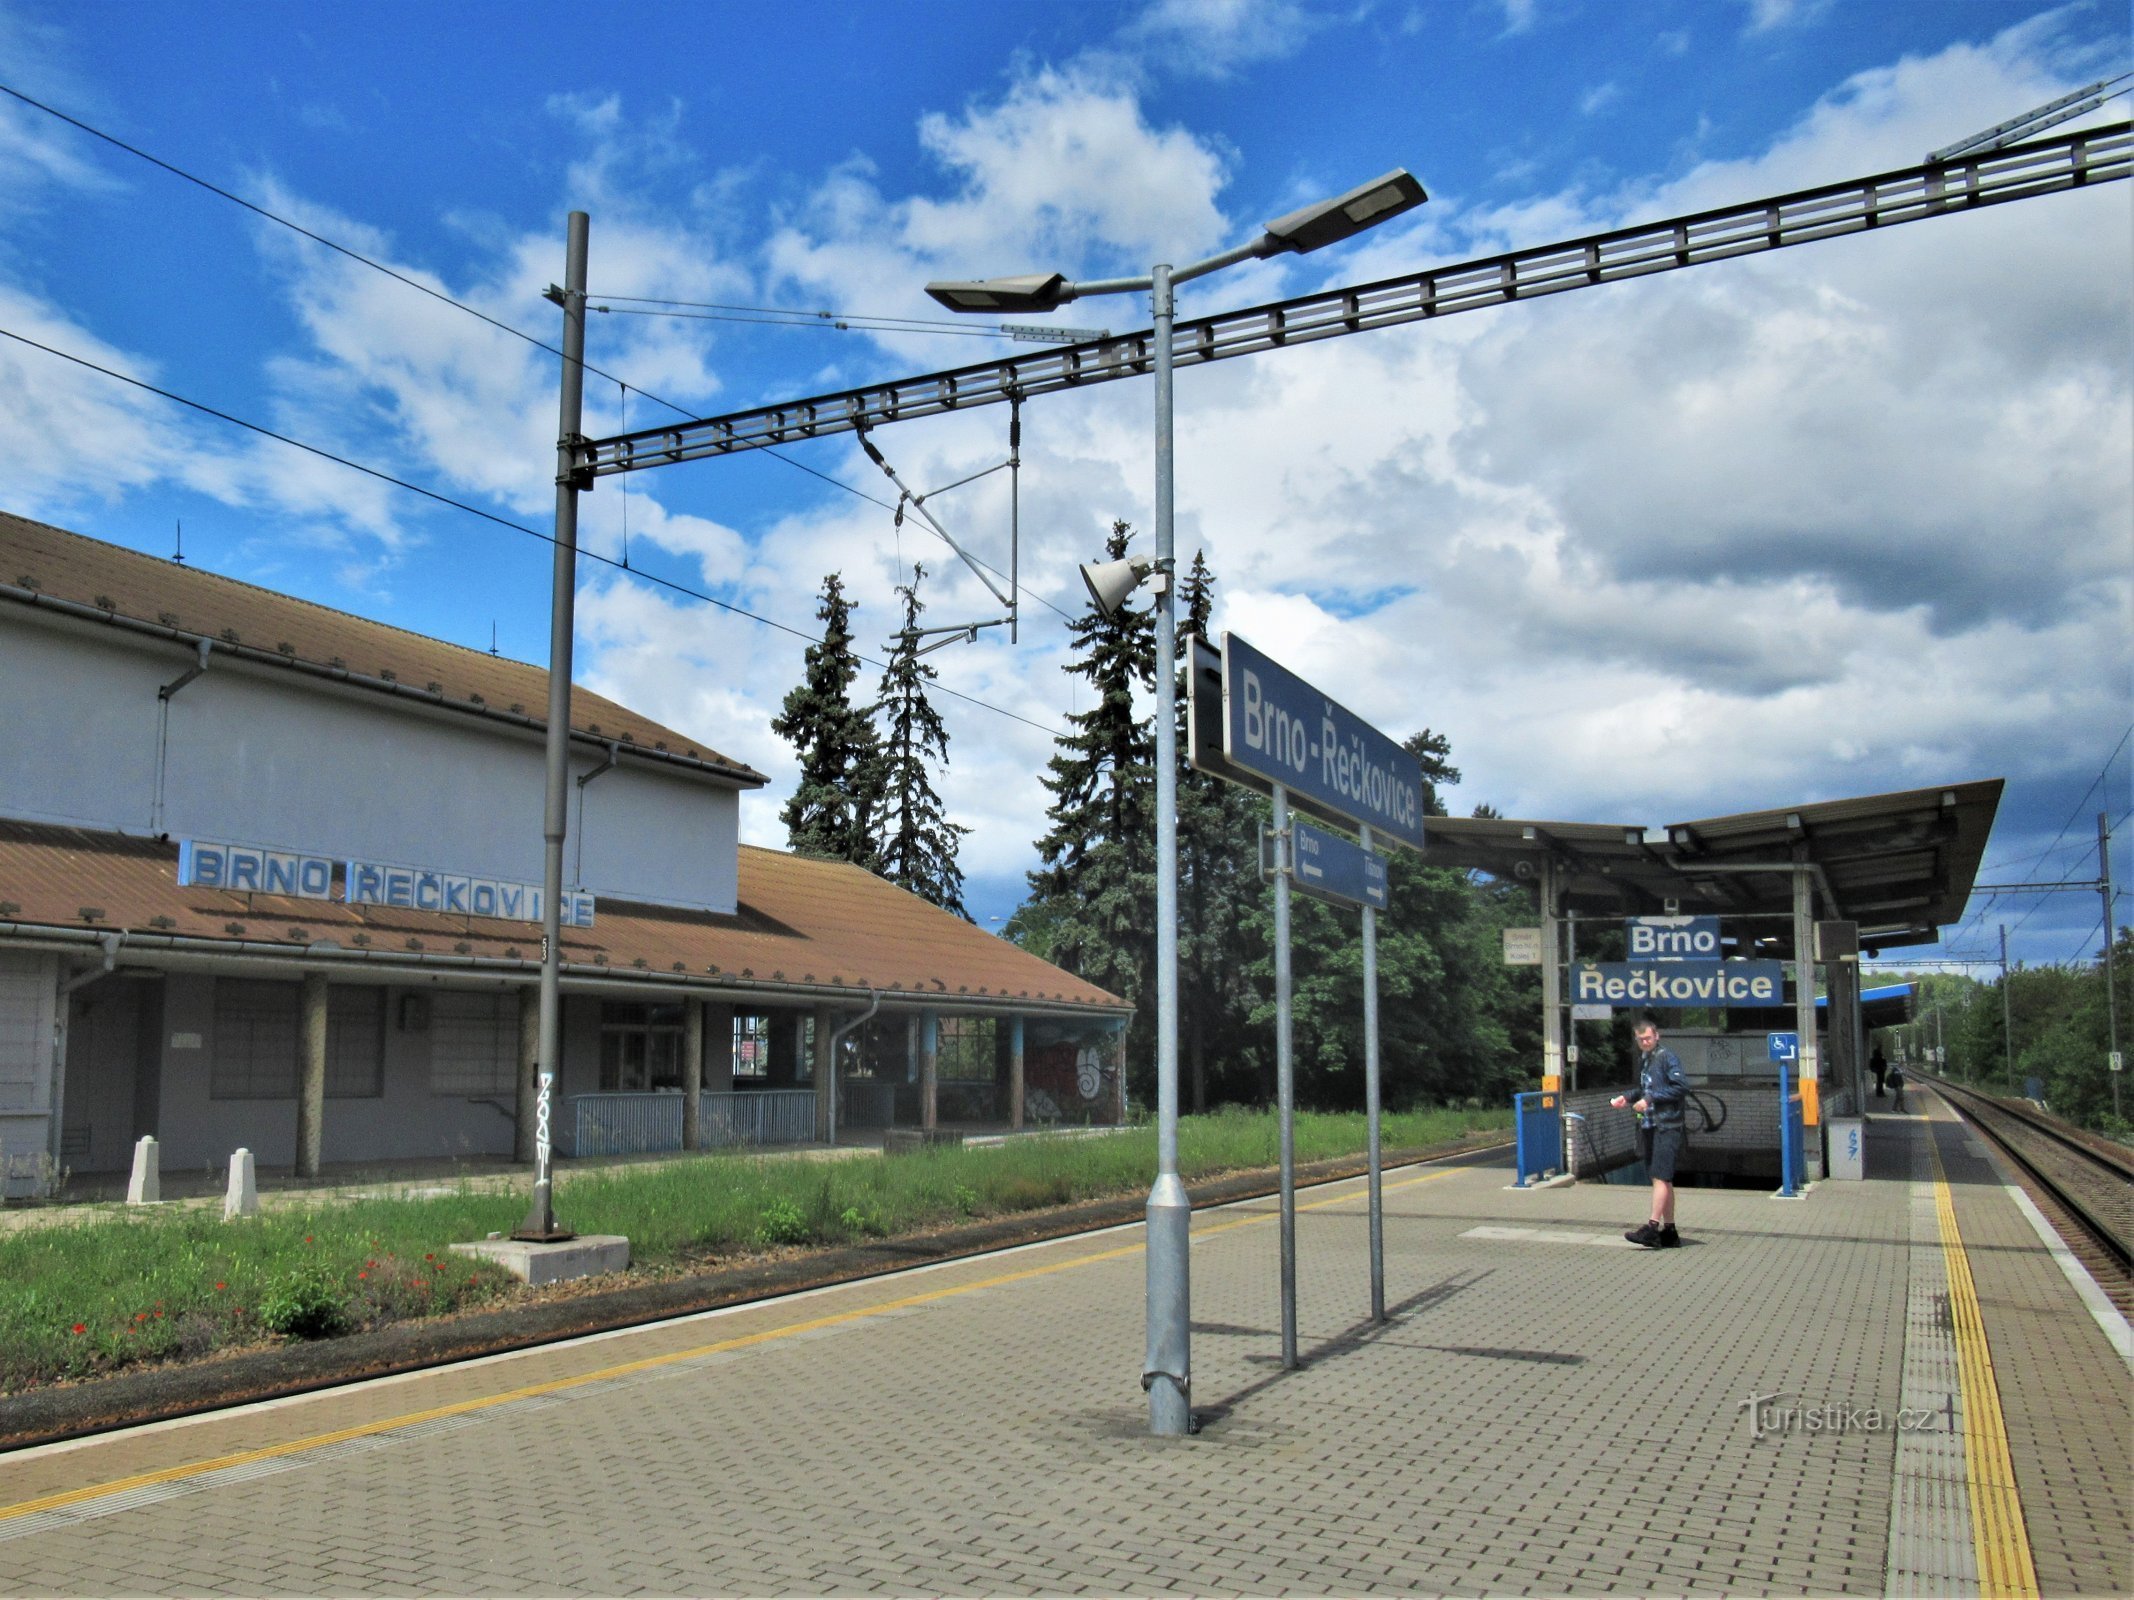 Željeznički kolodvor u Brno-Řečkovicama